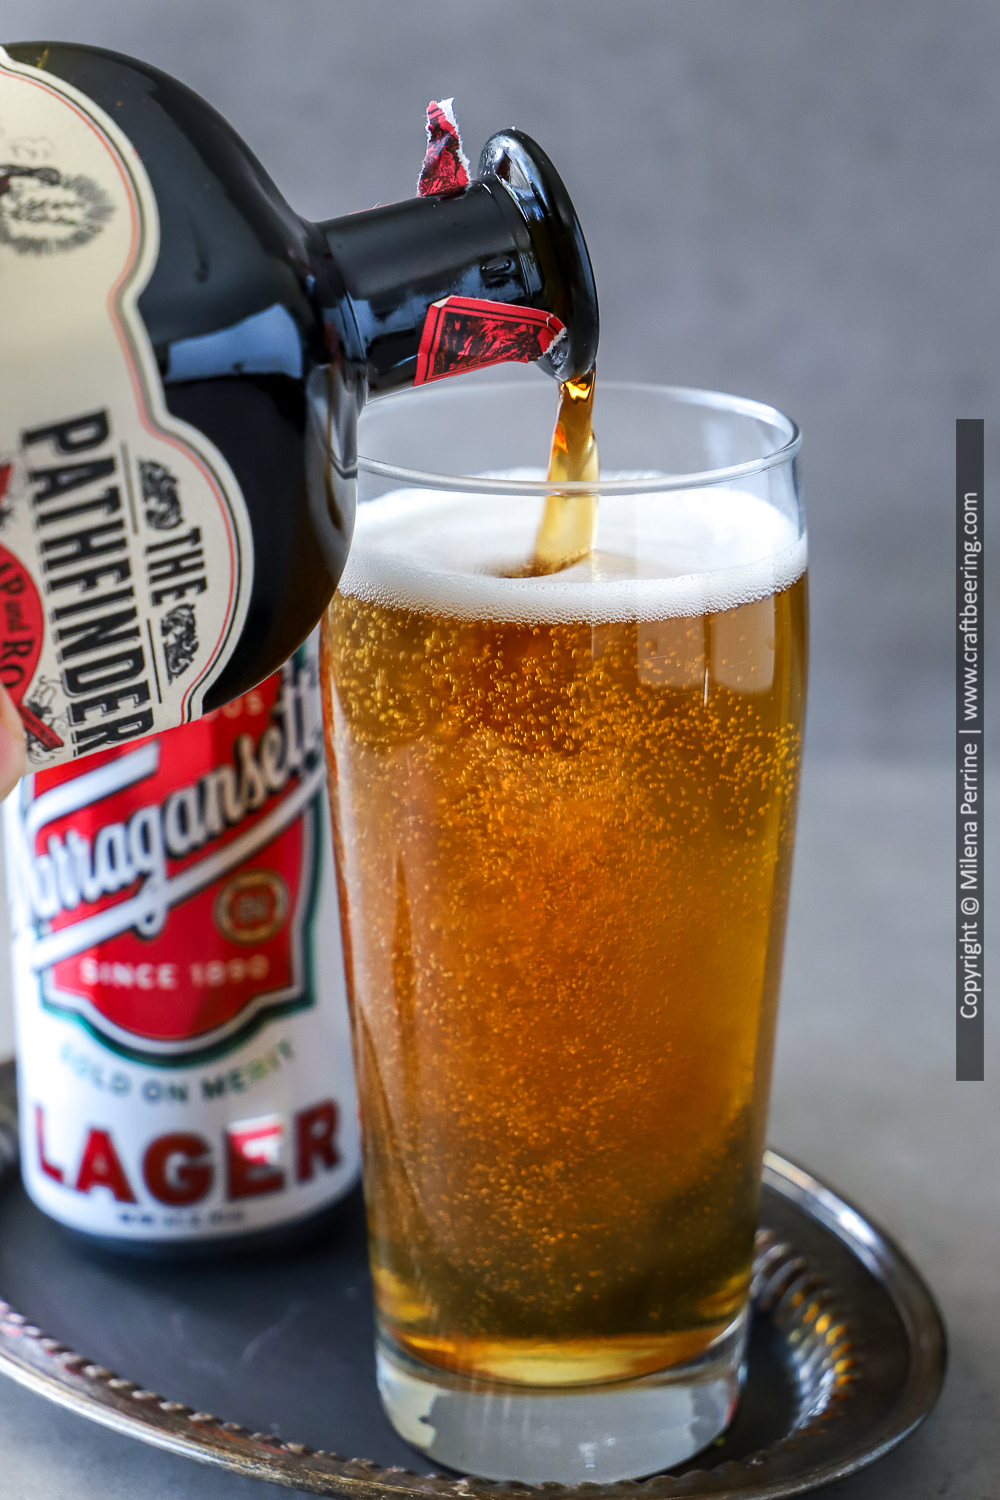 The Pathfinder beer shandy a la picon biere.